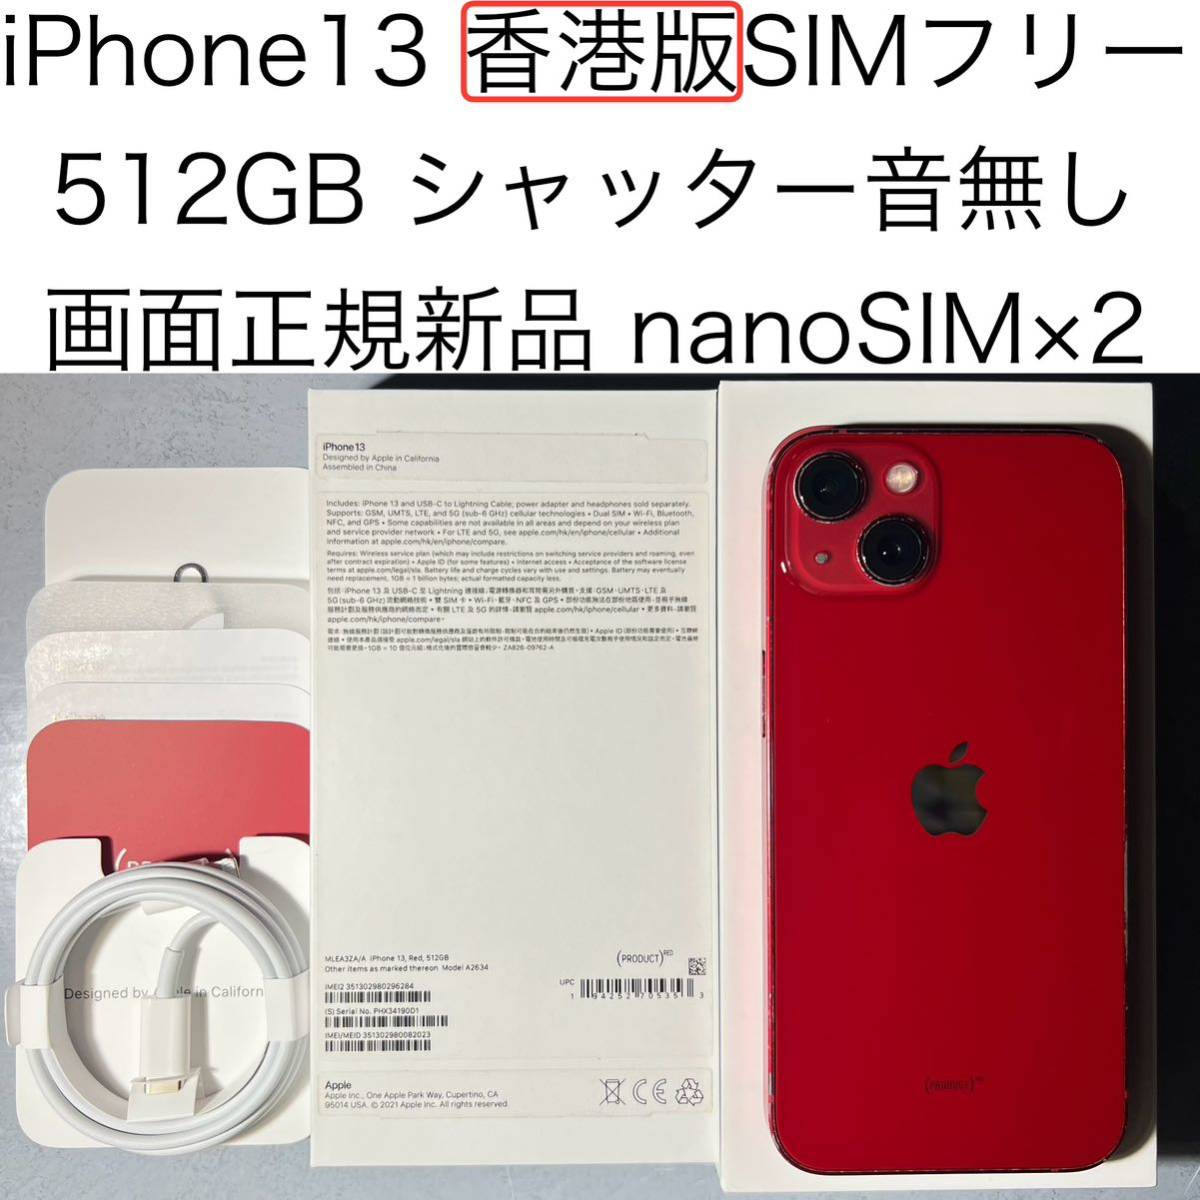 クーポン配布中交換無料 Apple iPhone 13 512GB 海外版 SIMフリー 香港